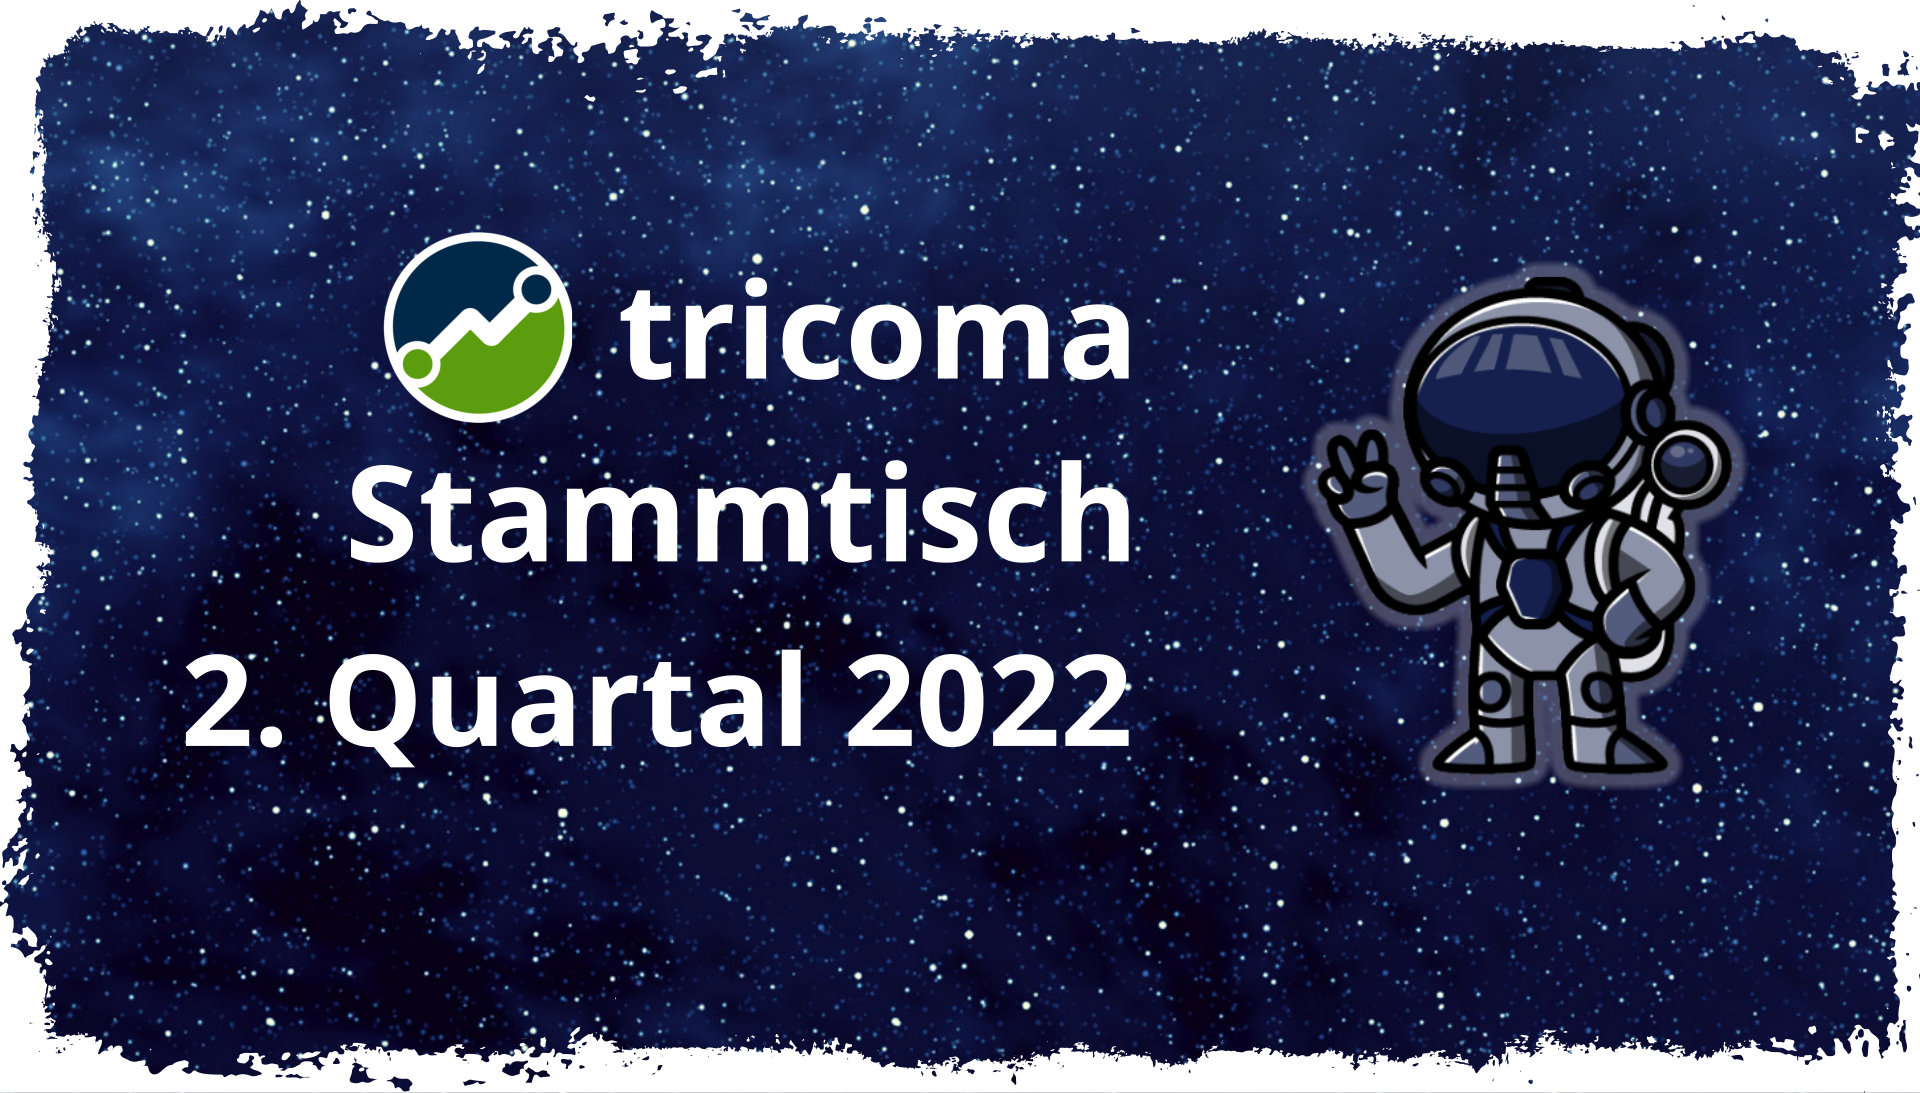 Umfrage zum nächsten tricoma Stammtisch Q2 2022